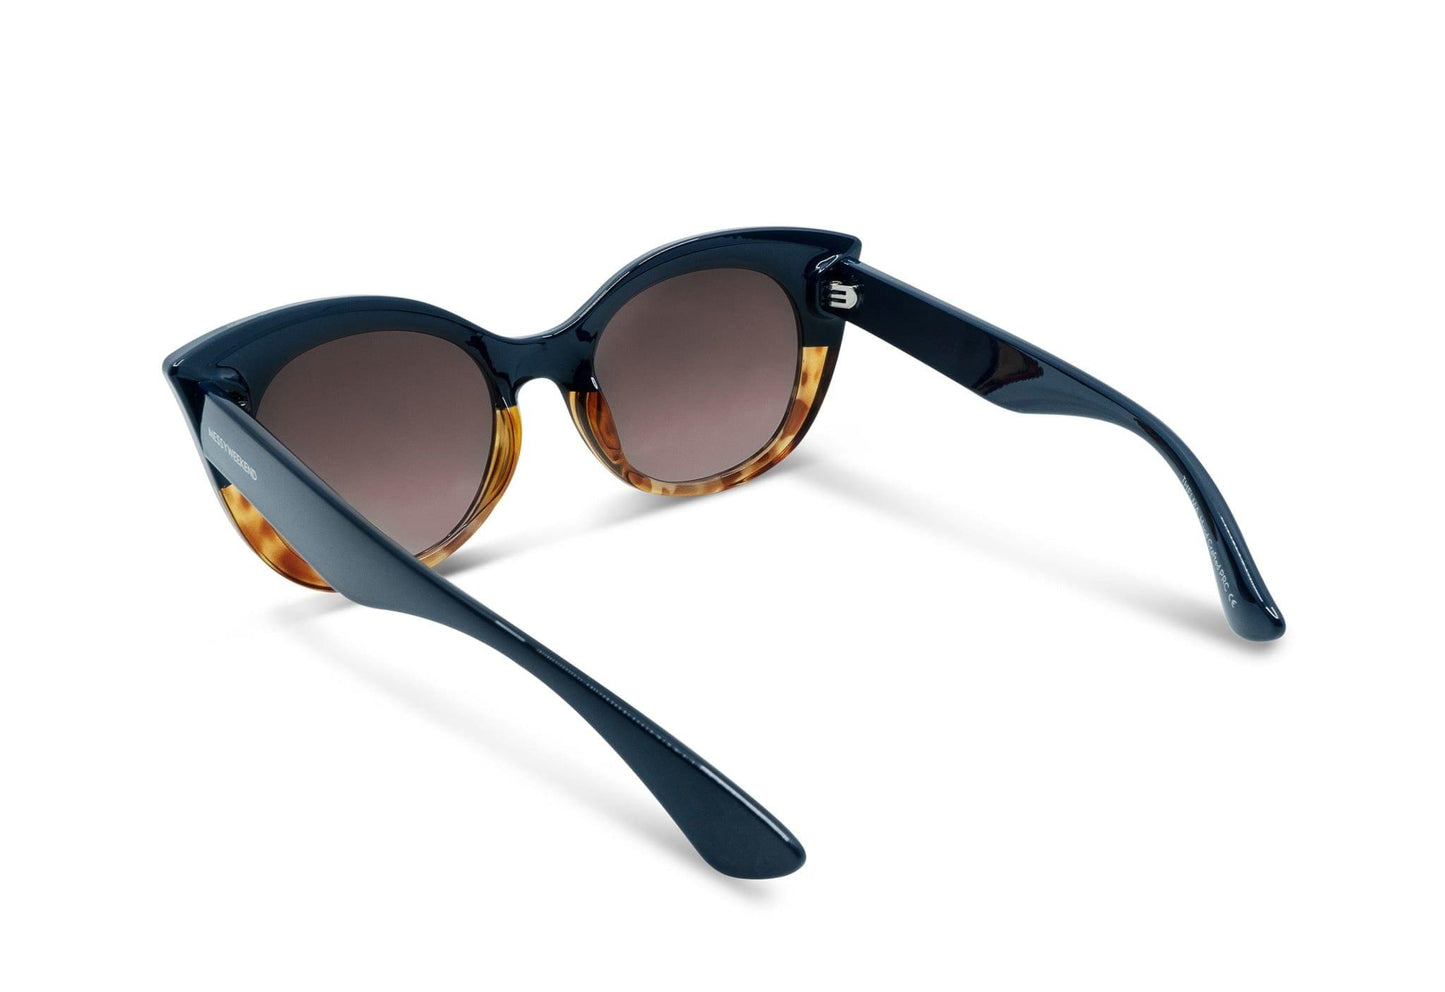 Thelma, Cat eye sunglasses for women dark green Frame UV400 protection